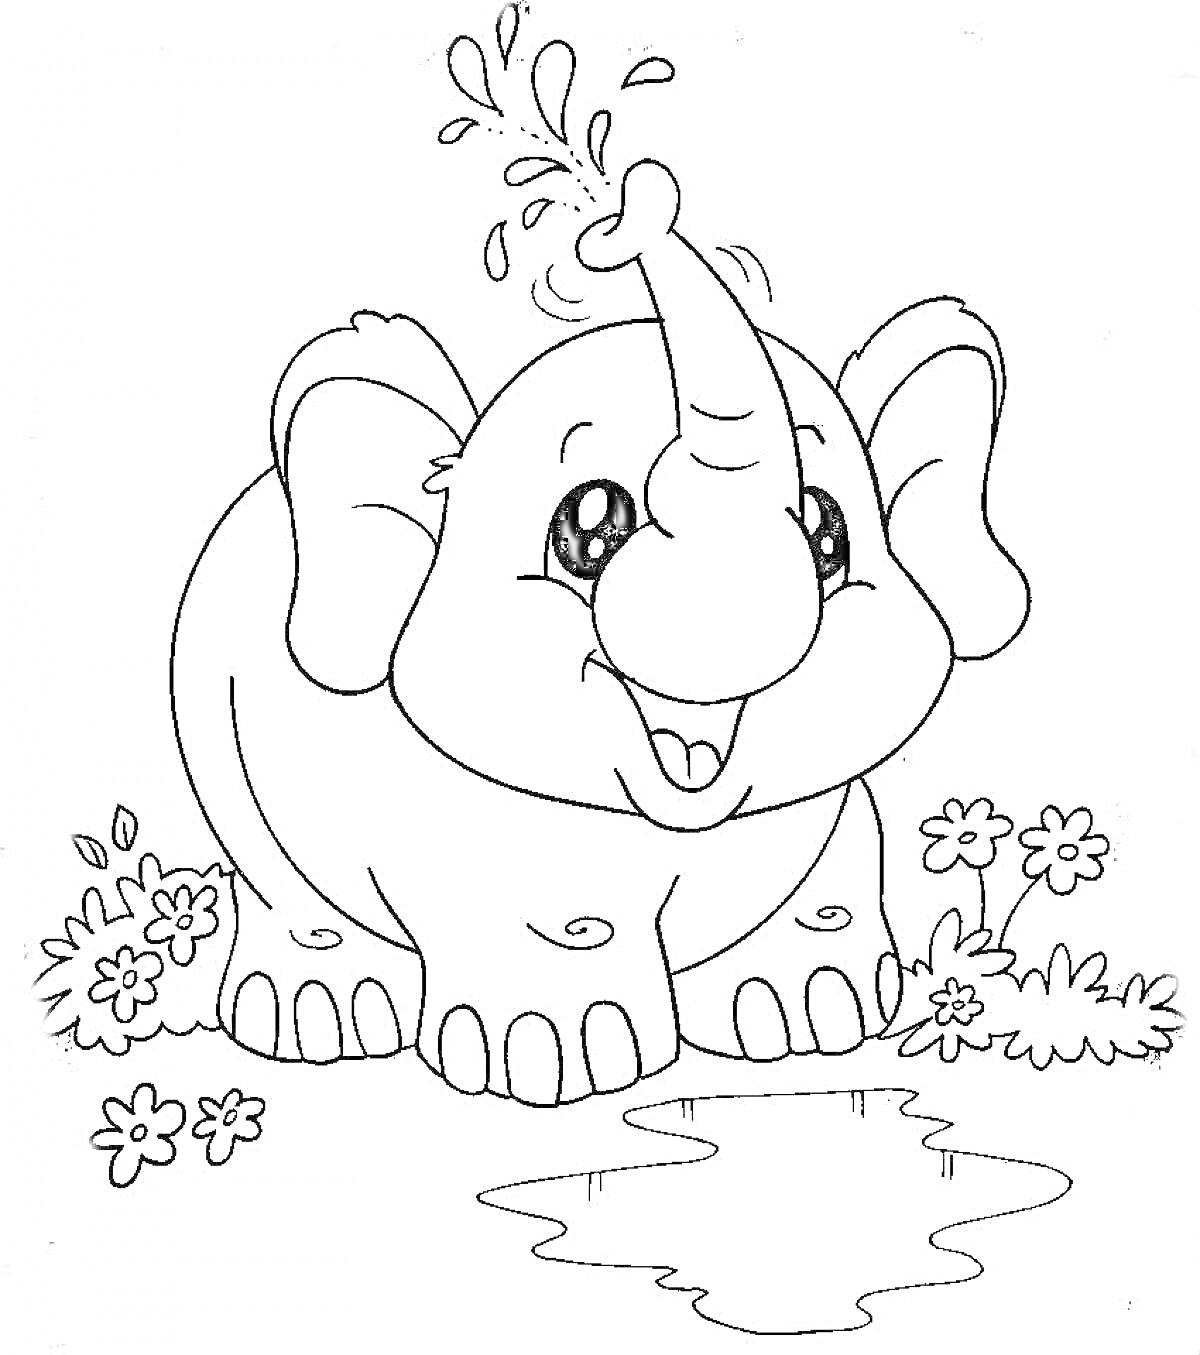 Раскраска Слоник, стоящий возле воды, с цветами вокруг